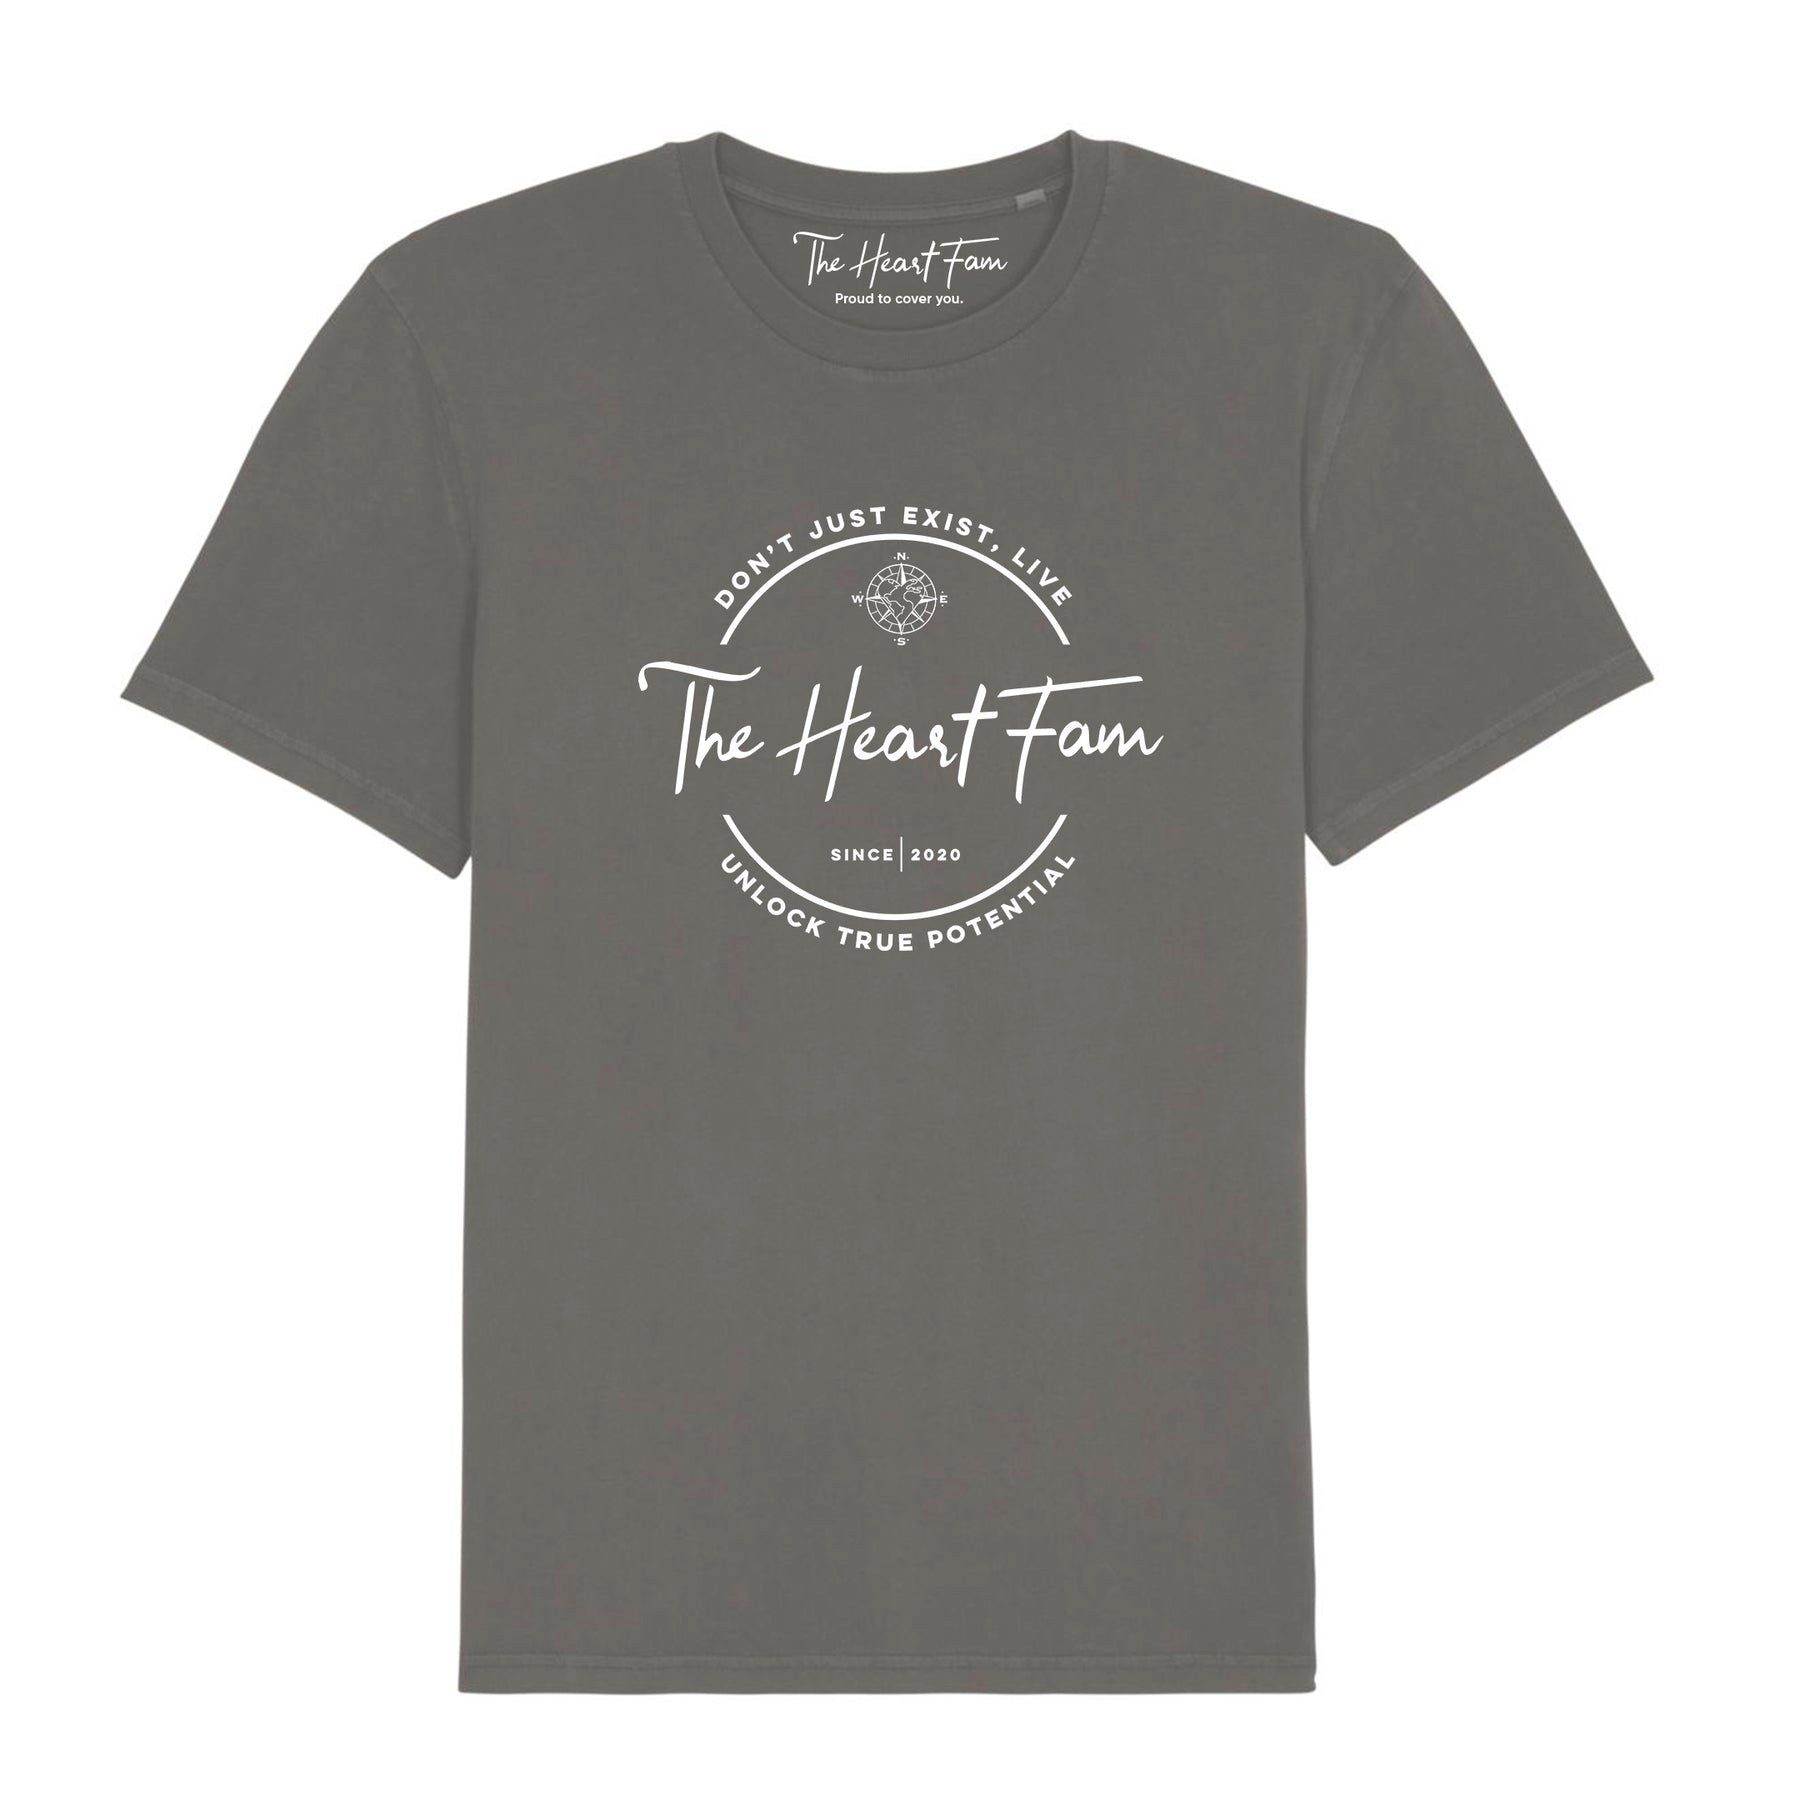 TheHeartFam T-Shirt Nachhaltiges Vintage Bio-Baumwolle Tshirt Antrazit Grau Herren Frauen Hergestellt aus Portugal / Familienunternehmen